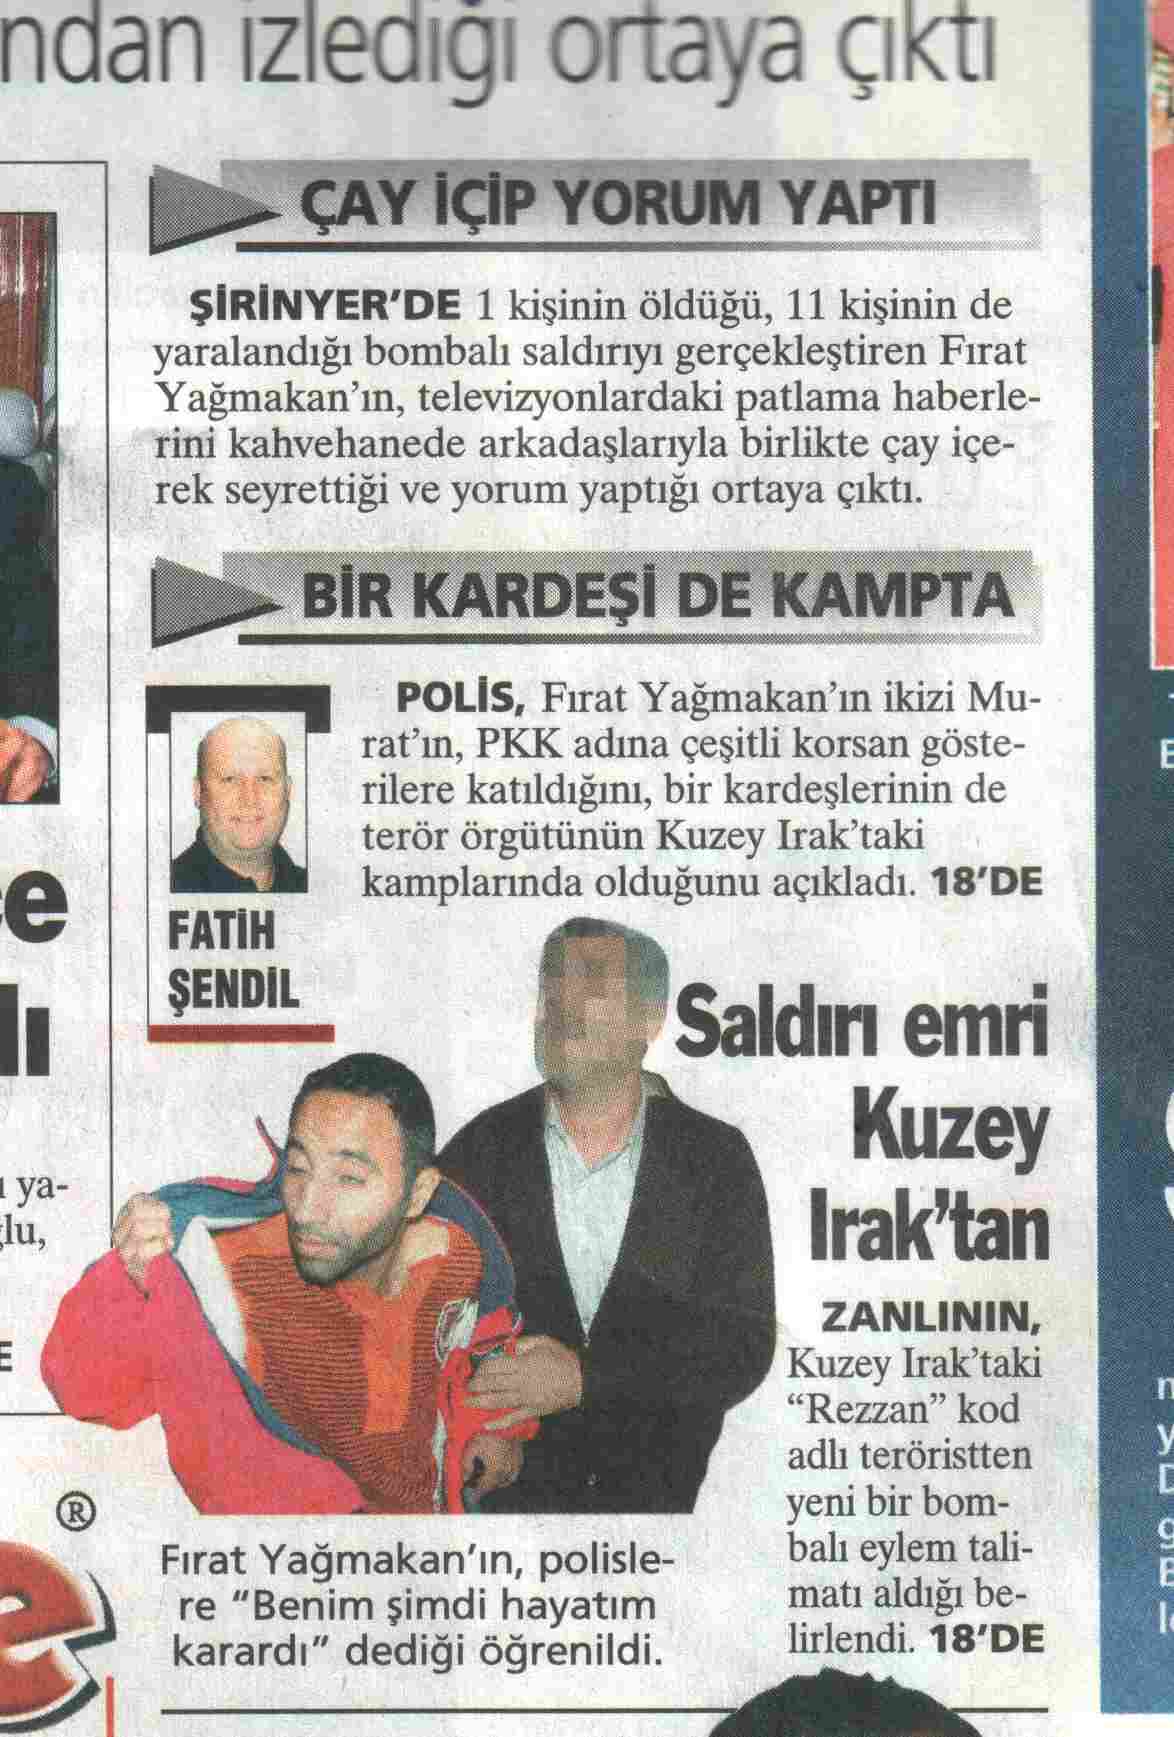  İzmir de pkk bombacısı yakalanmış...